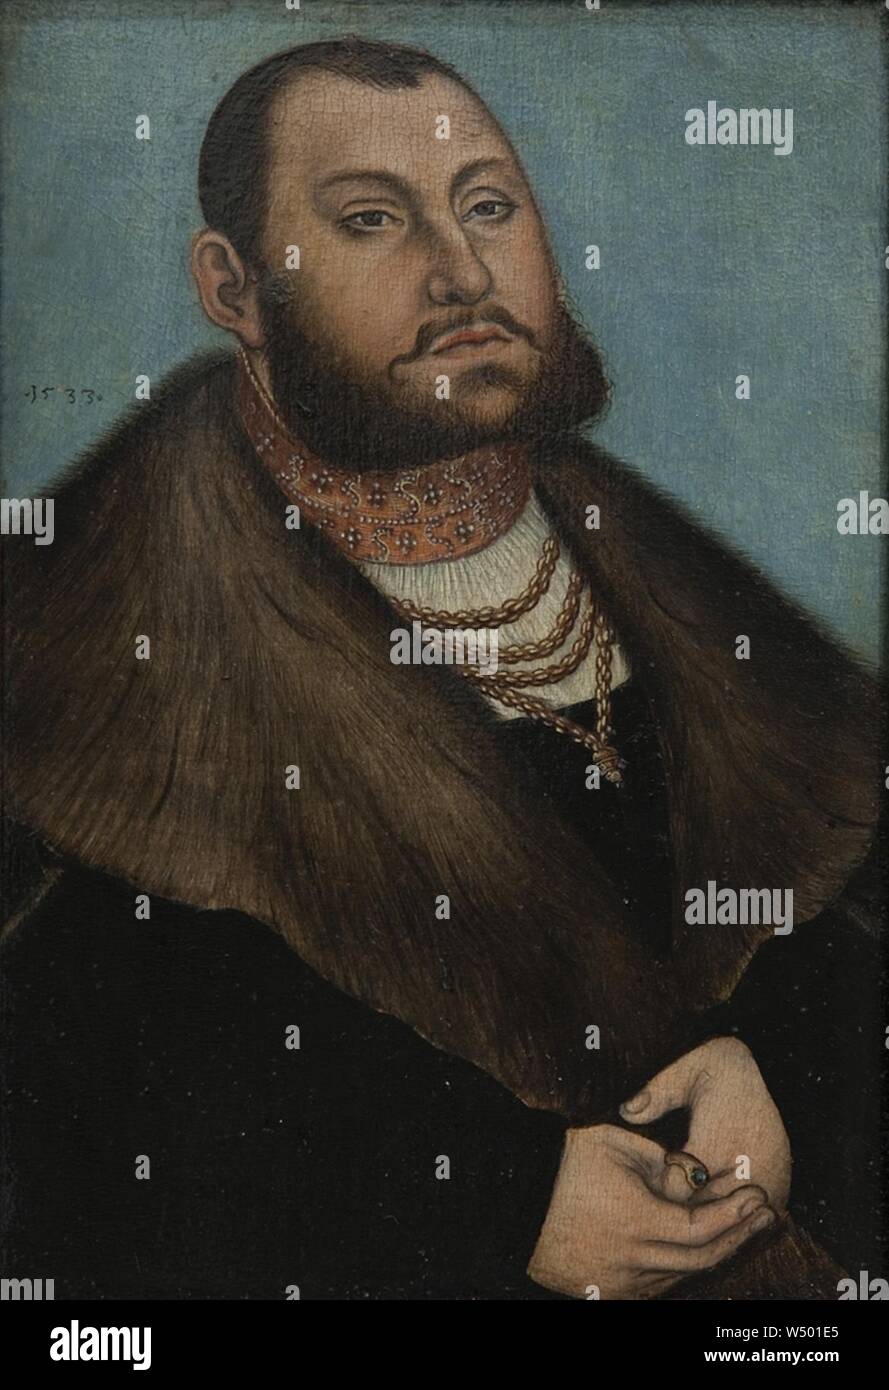 Lucas Cranach d.Ä. - Porträt des Kurfürsten Johann Friedrich des Großmütigen von Sachsen Foto Stock